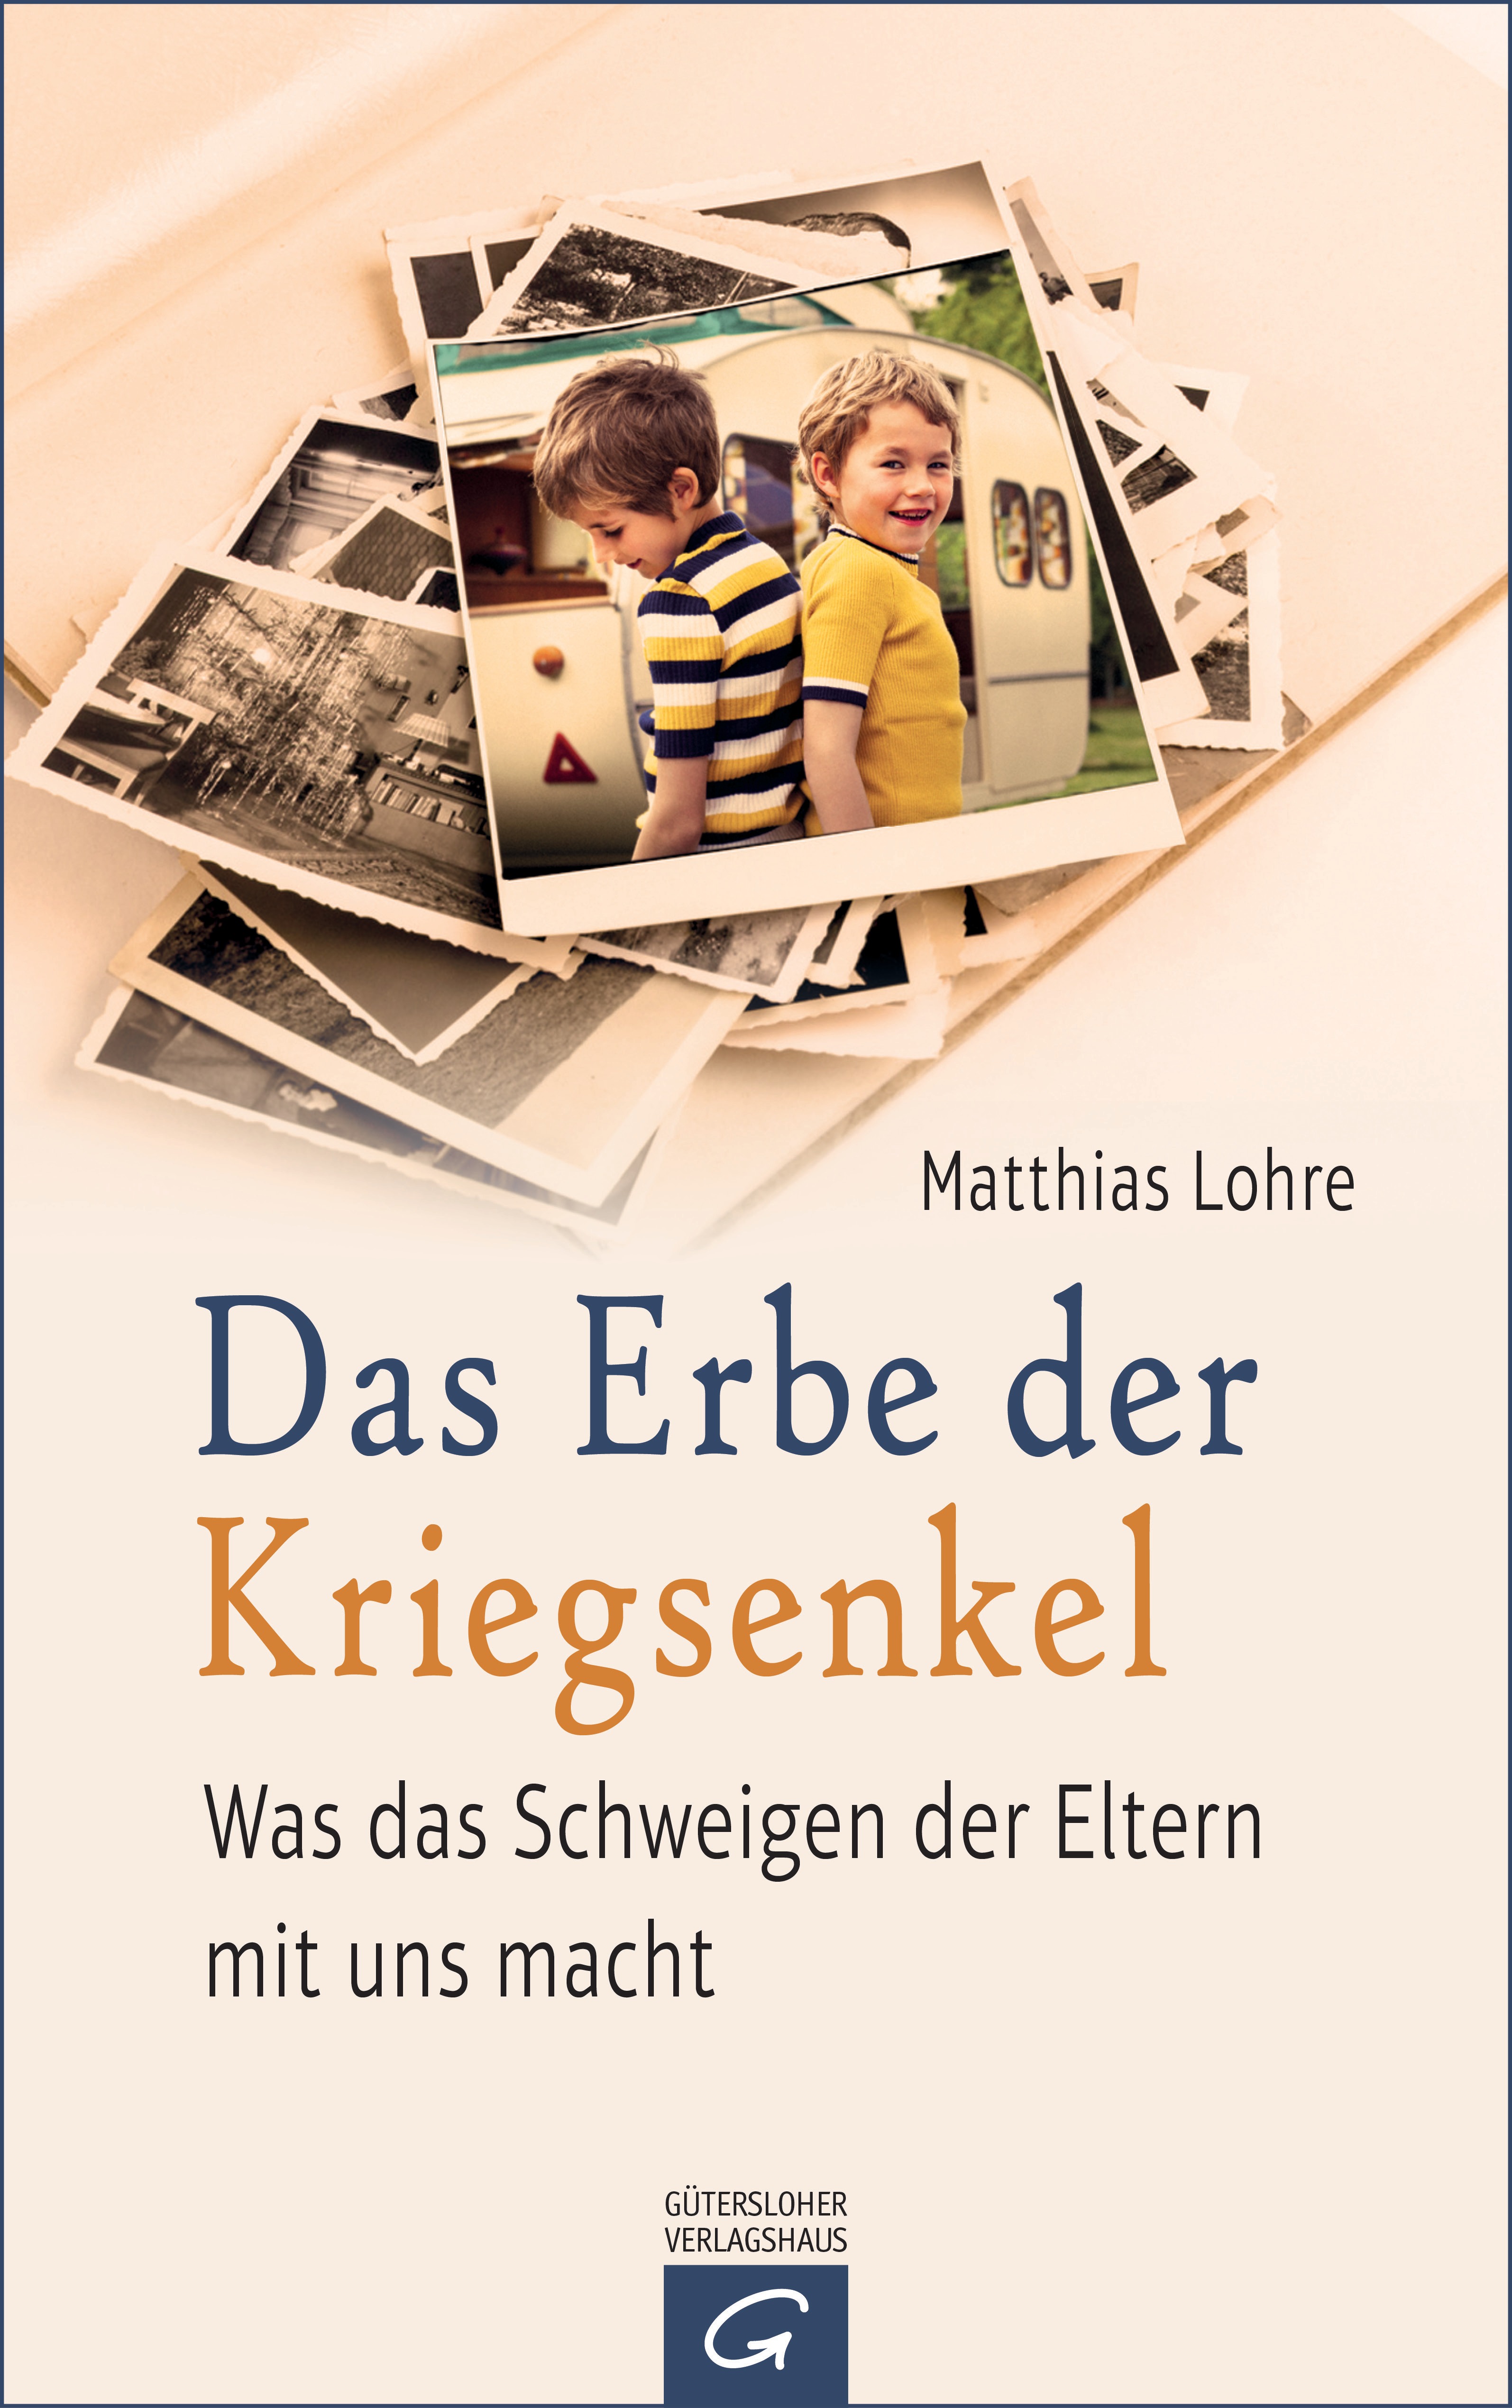 Das Erbe der Kriegsenkel von Matthias Lohre